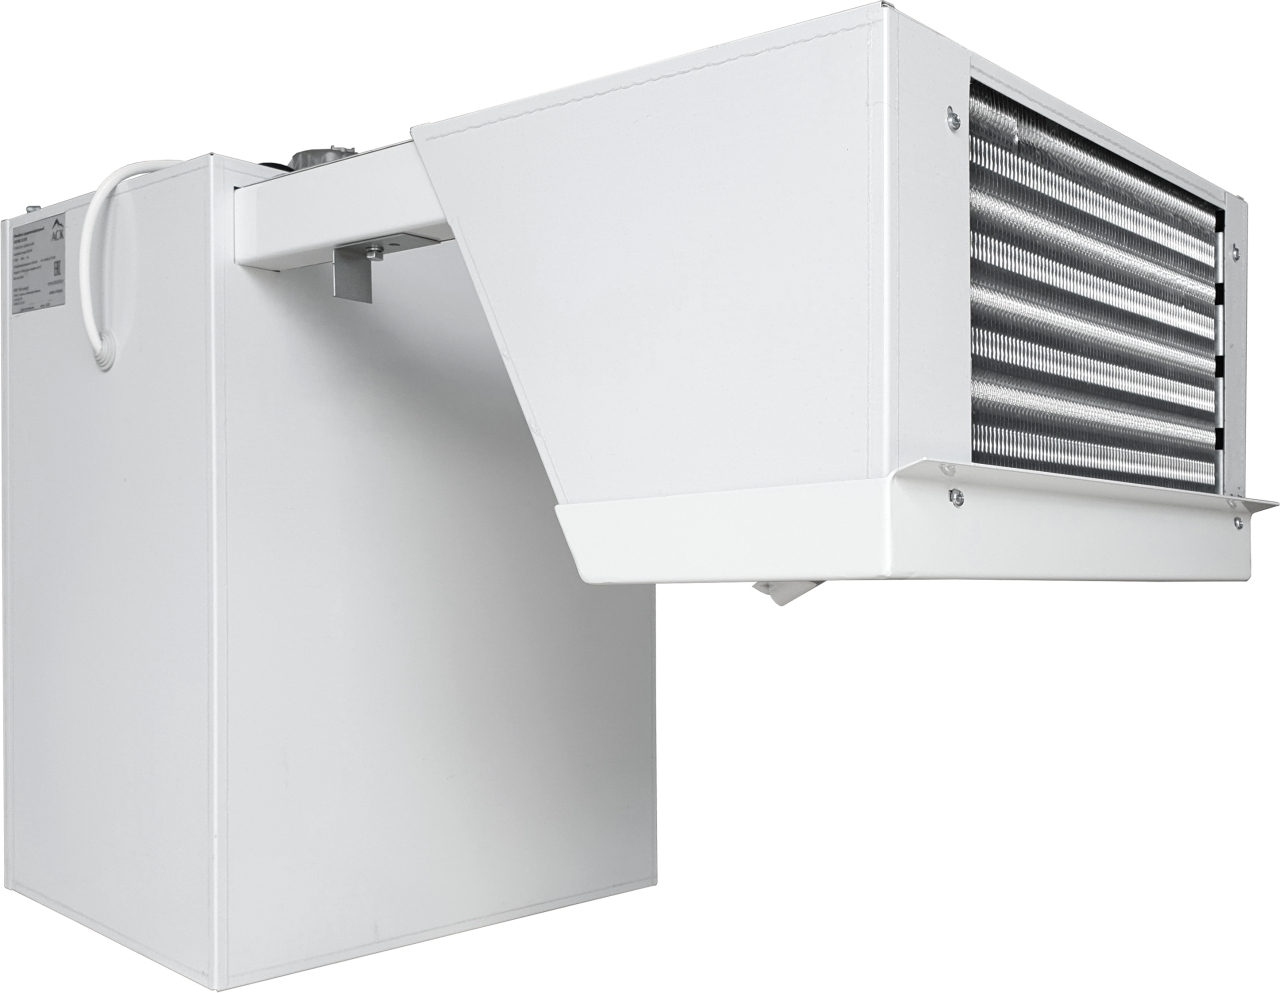 Моноблок холодильный среднетемпературный АСК-холод МС-12 ЭКО - Изображение 2